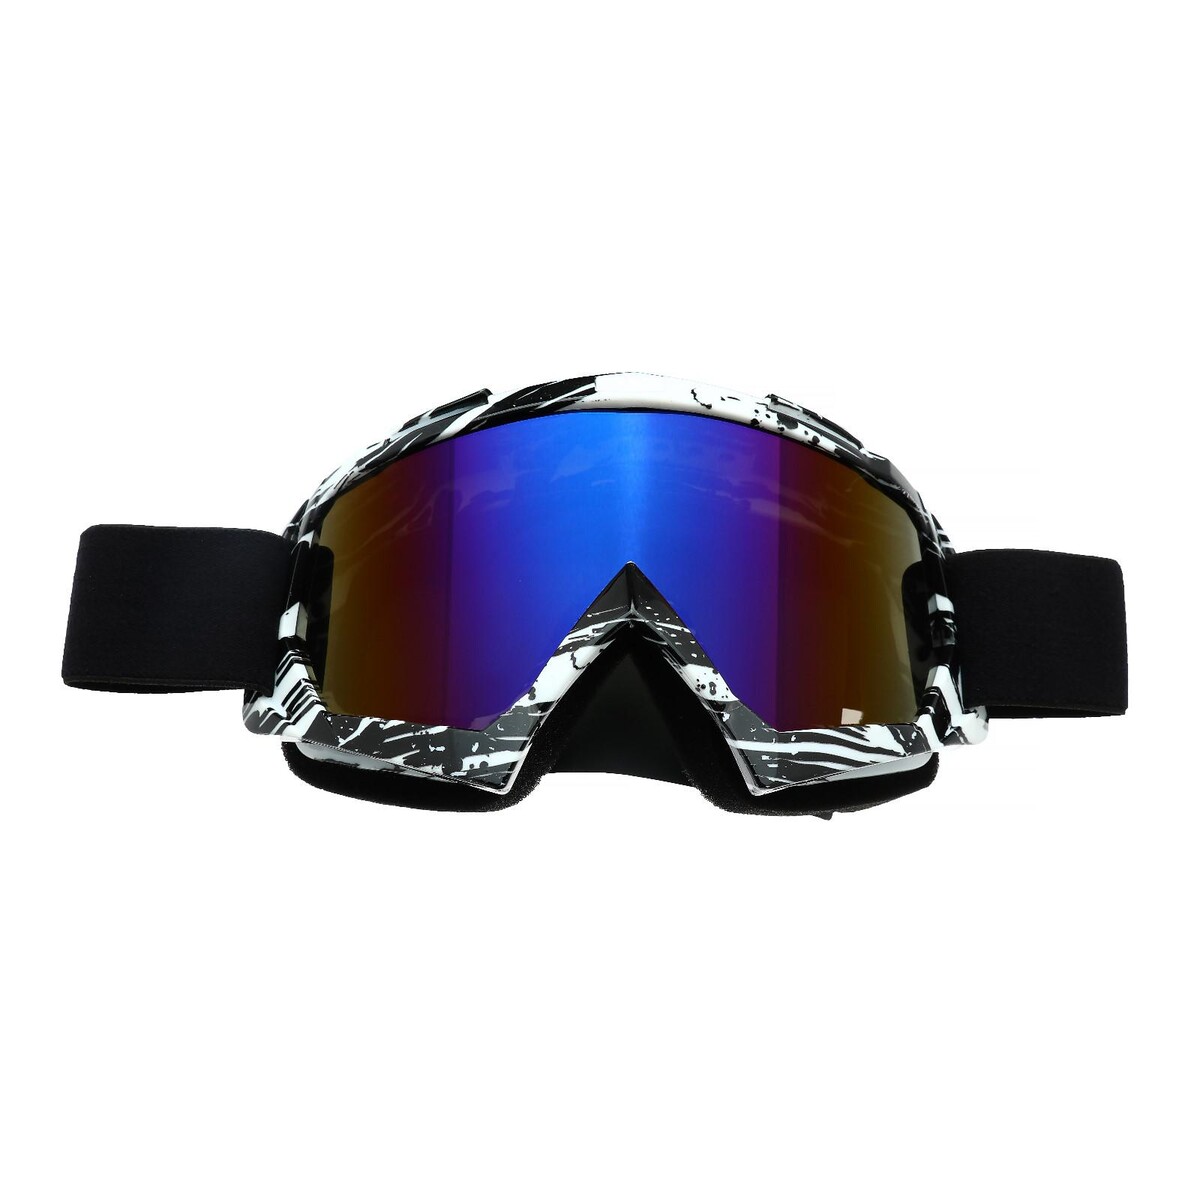 Очки-маска для езды на мототехнике, стекло сине-фиолетовый хамелеон, черно-белые, ом-18 очки маска для езды на мототехнике стекло золотой хром бело красно черные ом 10